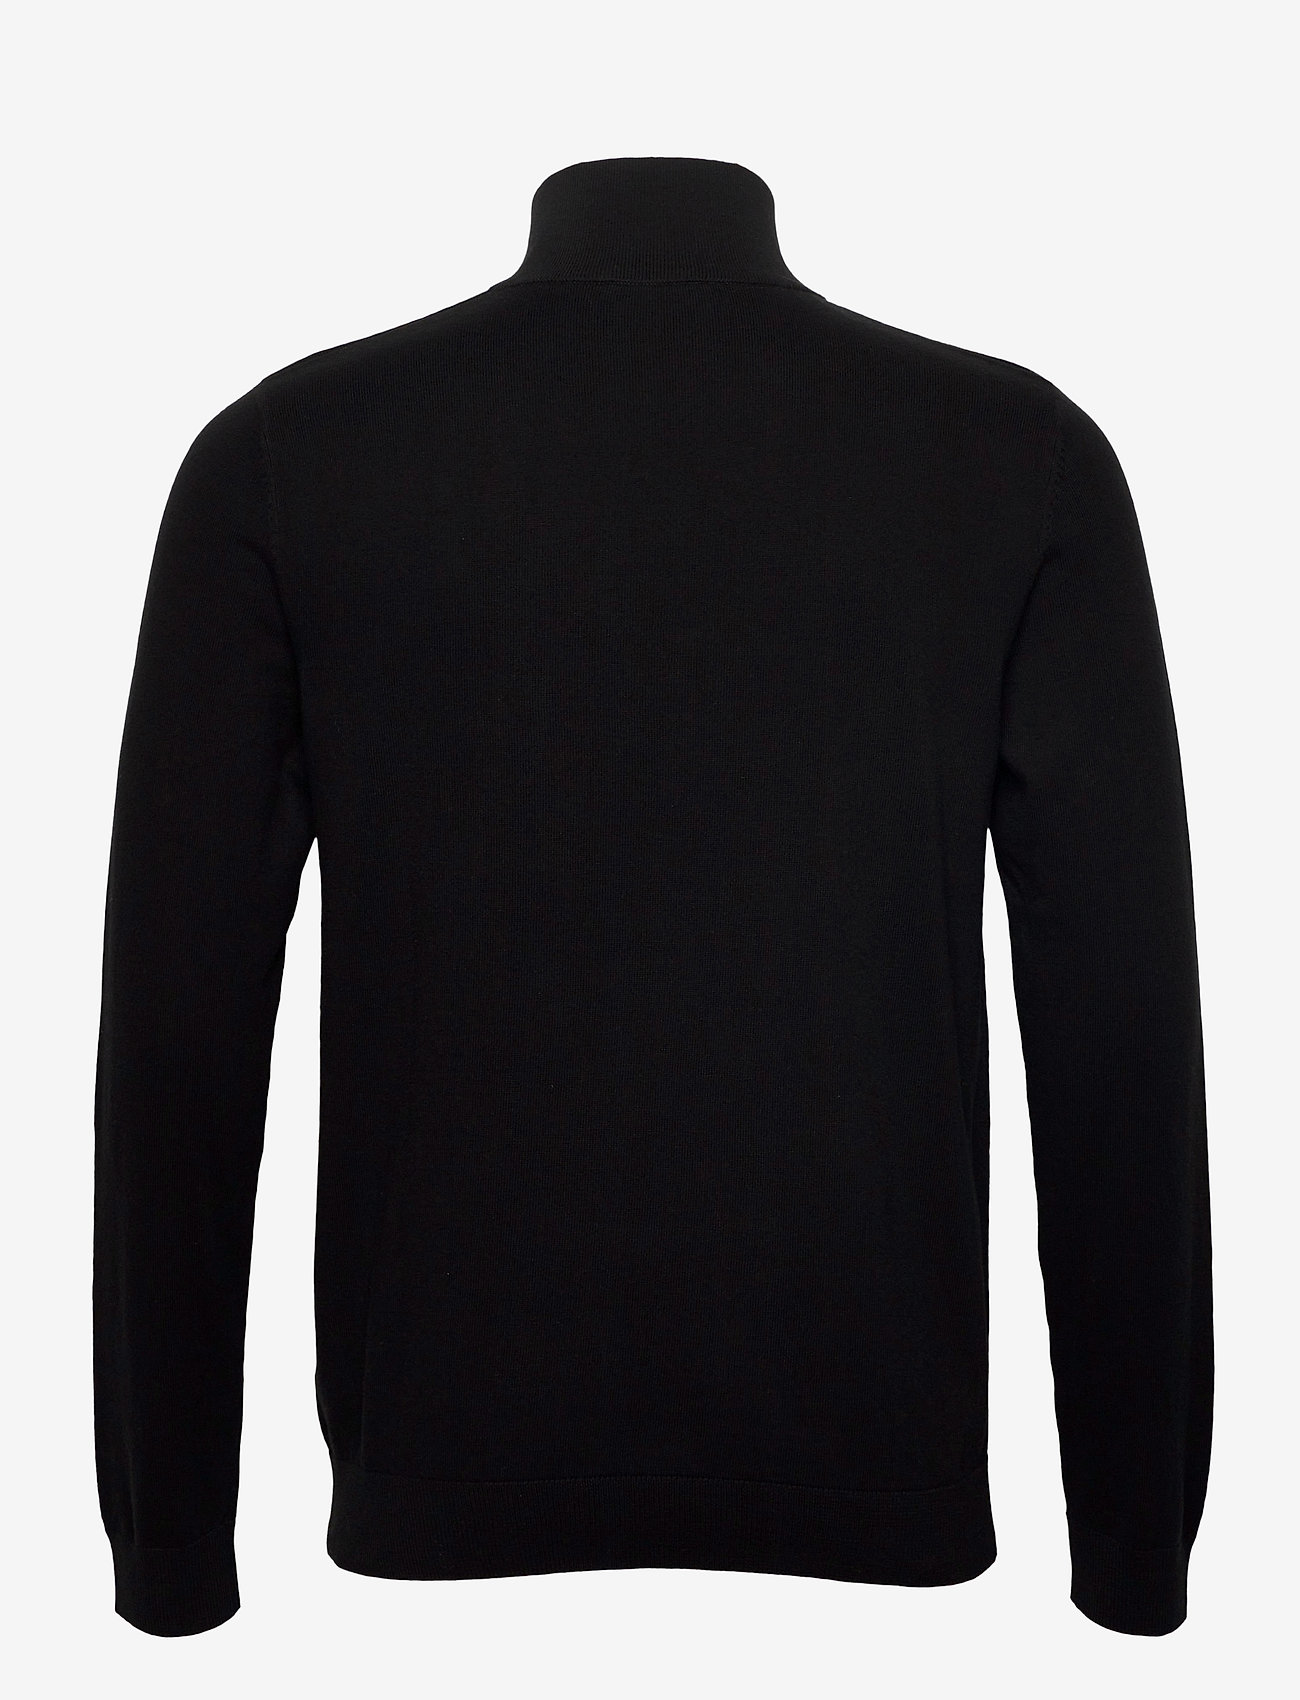 Selected Homme - SLHBERG HALF ZIP CARDIGAN NOOS - trøjer med lynlås - black - 1